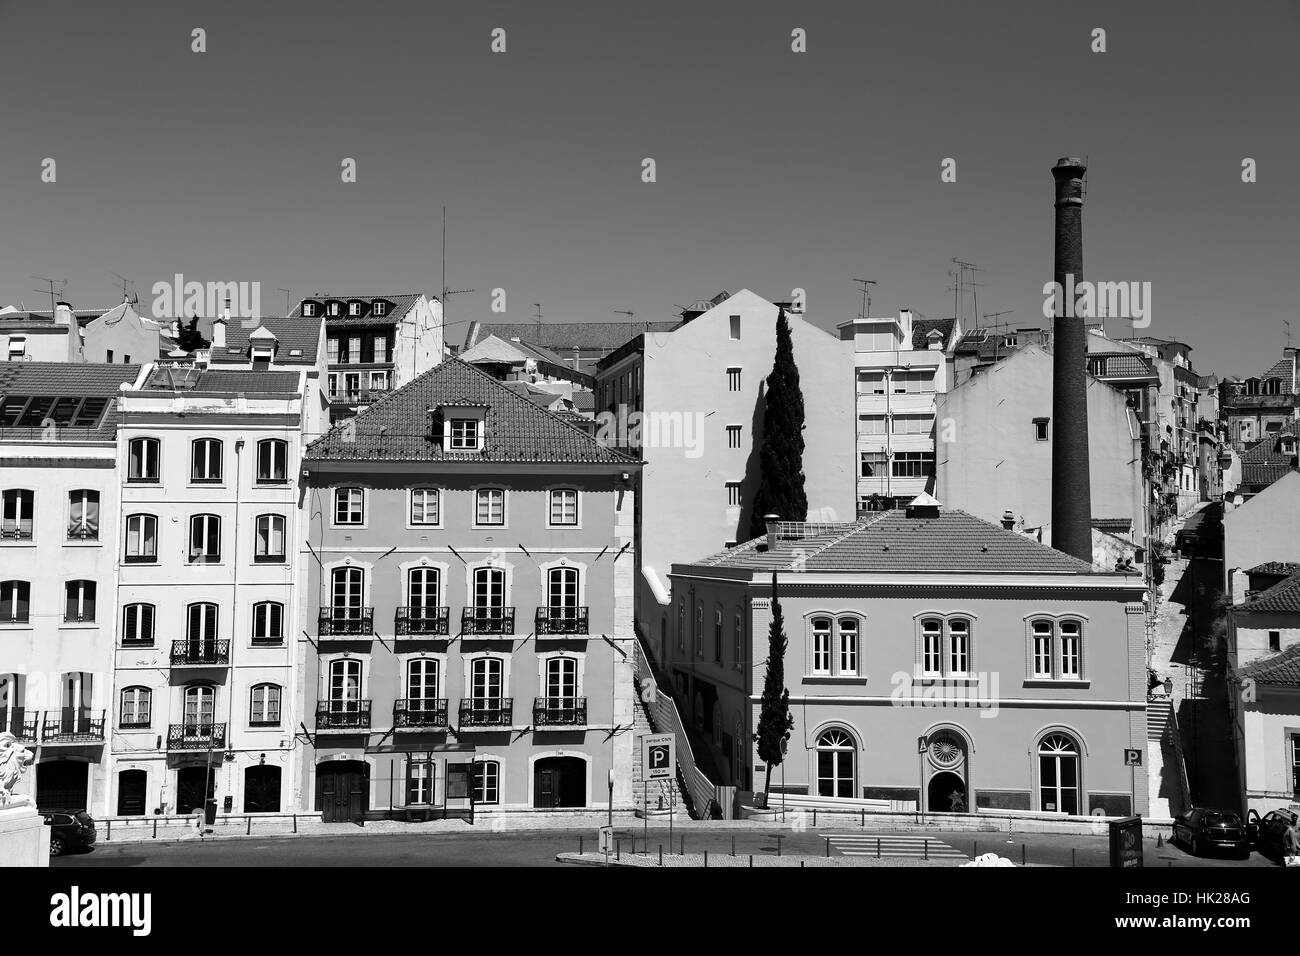 Bilder von Lissabon, Portugal. Lissabon-Architektur und Sehenswürdigkeiten. Stockfoto